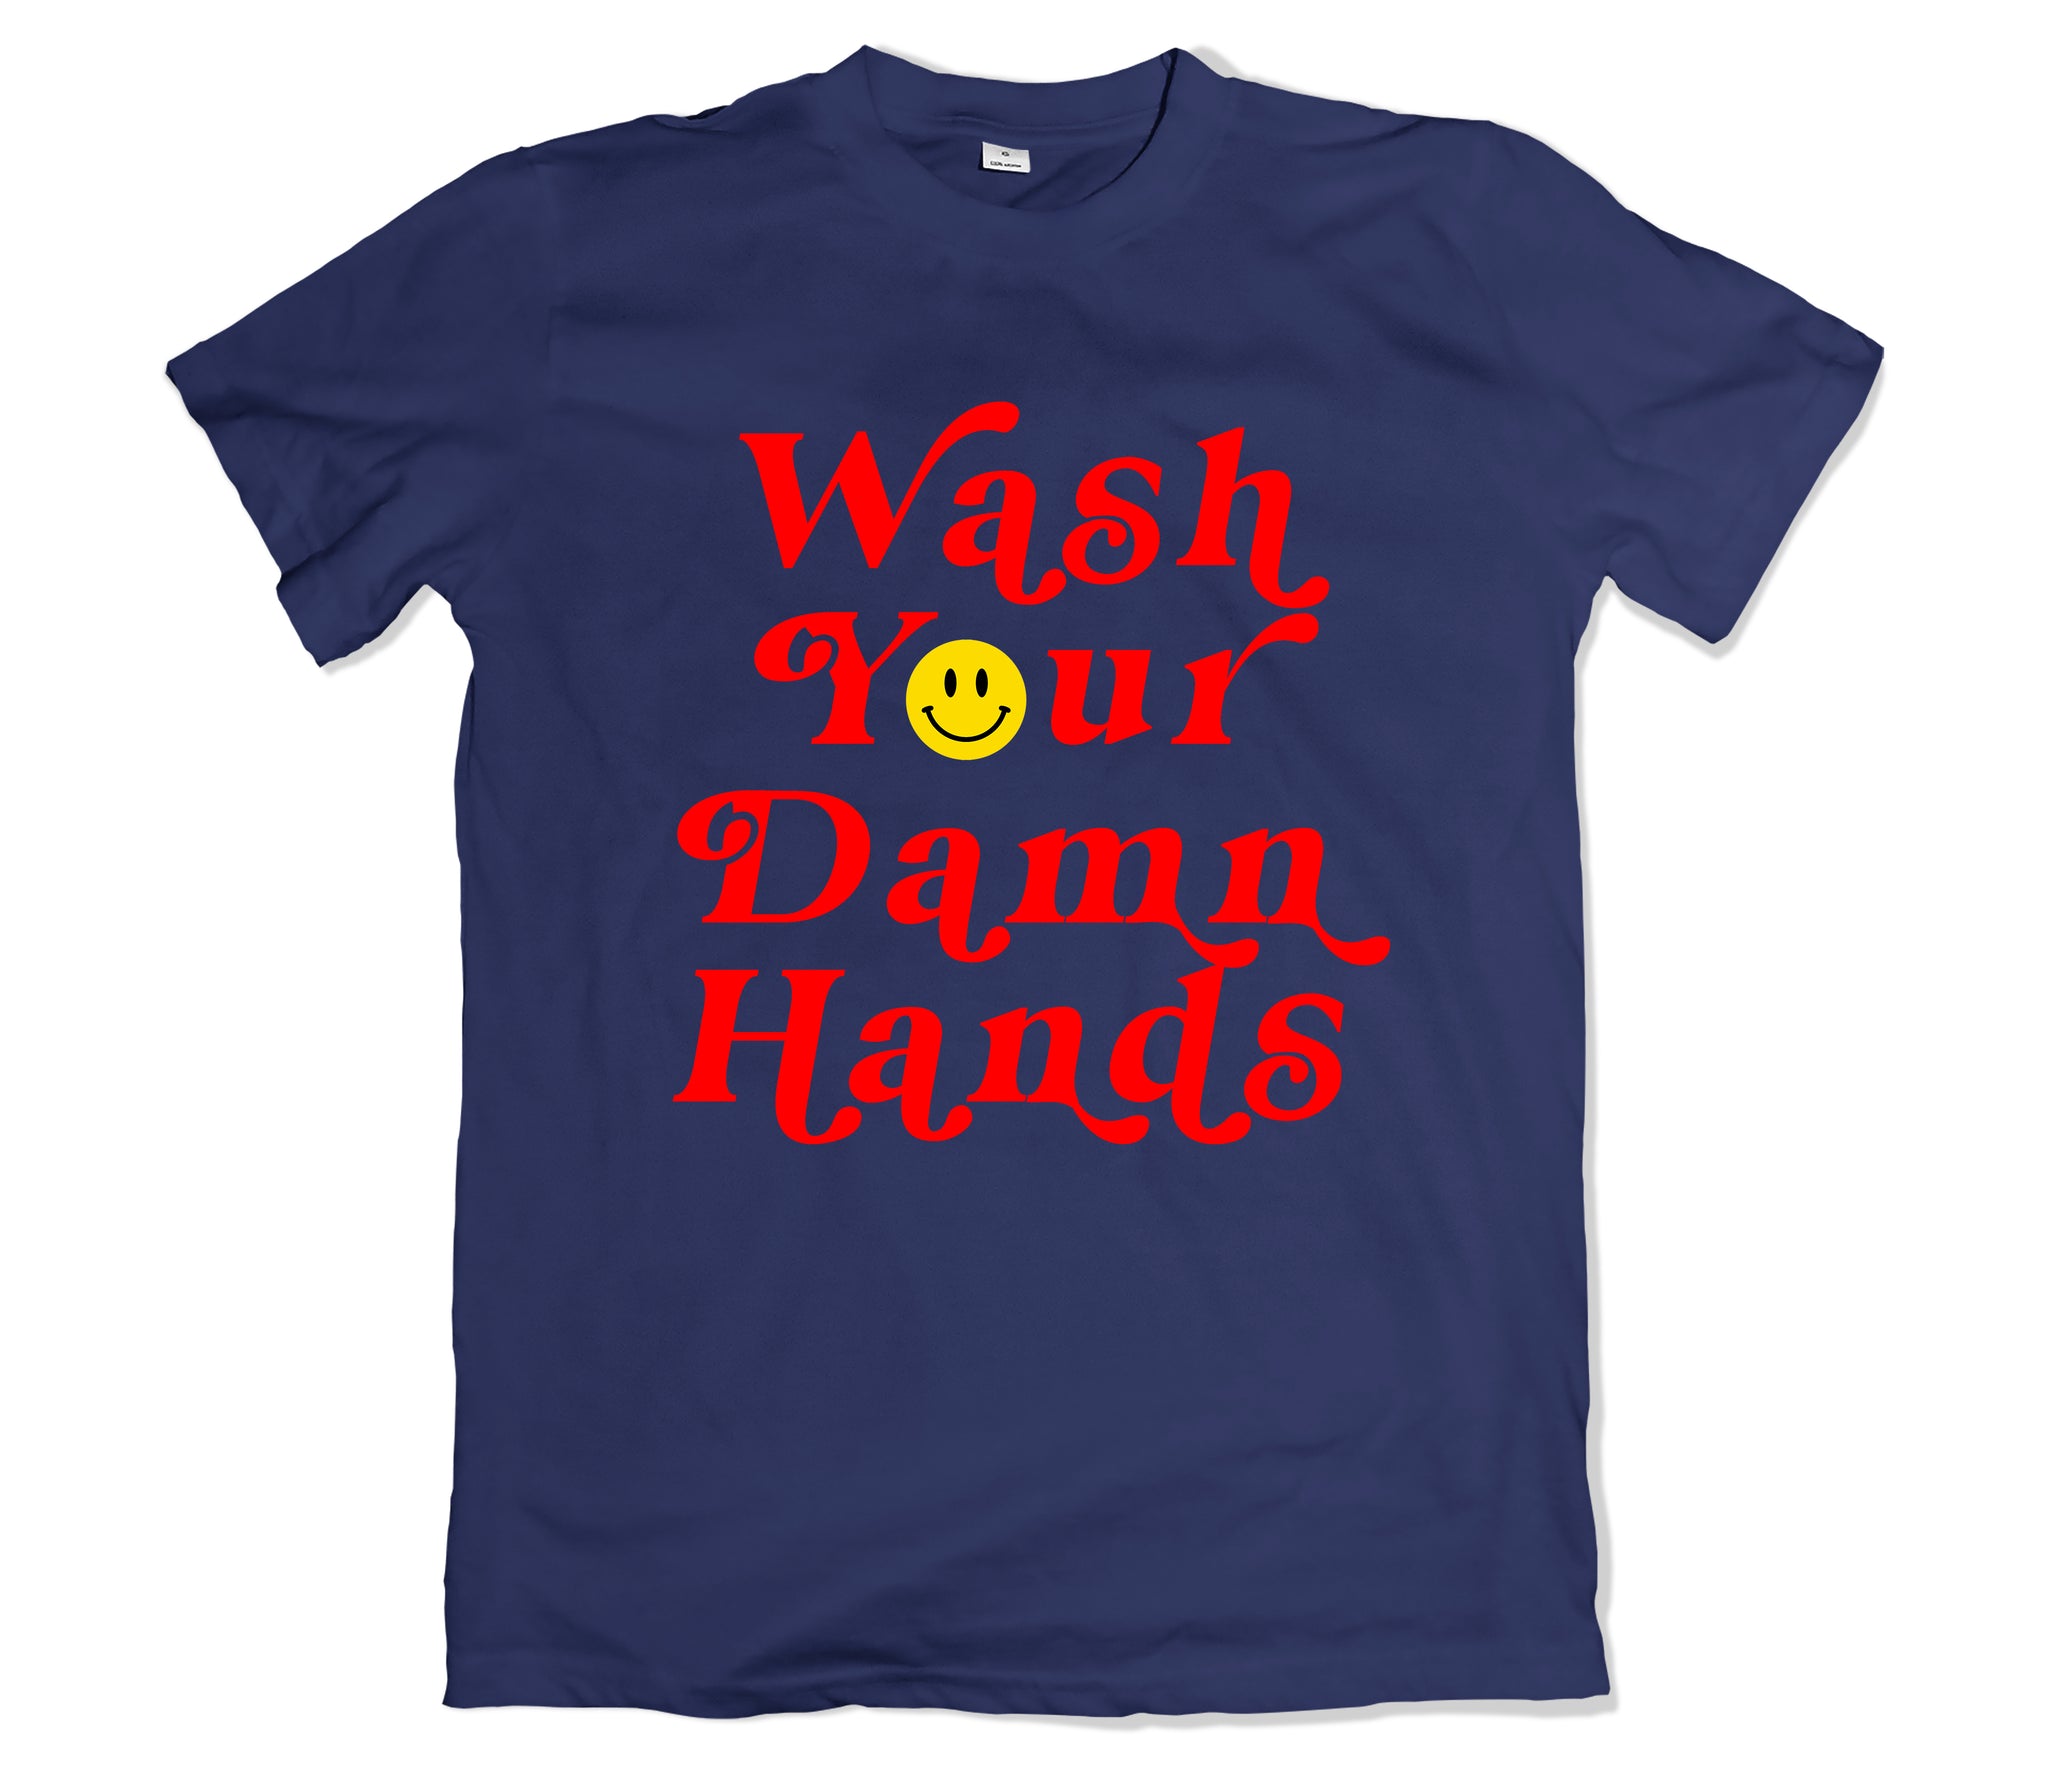 Wash Your Hands T-Shirt - TOPS, TSS CUSTOM GRPHX, SNEAKER STUDIO, GOLDEN GILT, DESIGN BY TSS